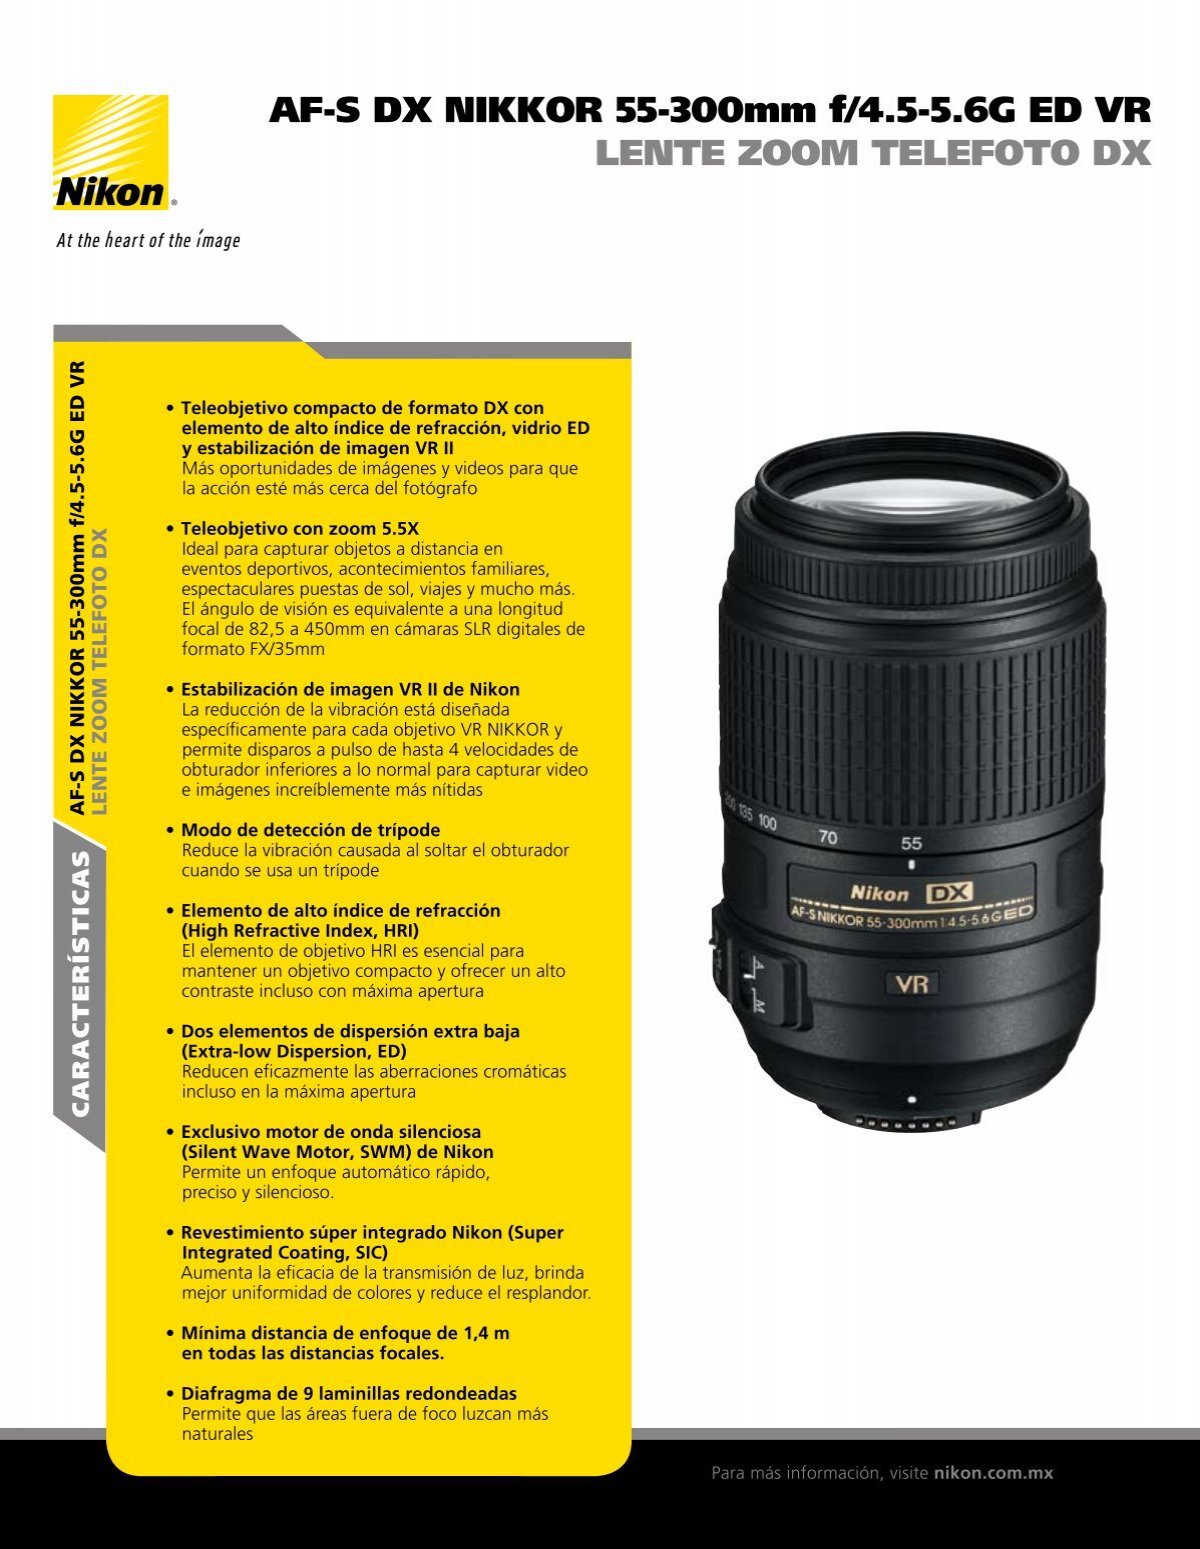 Nikon DX AF-S 55-300mm 4.5-5.6G ED VR